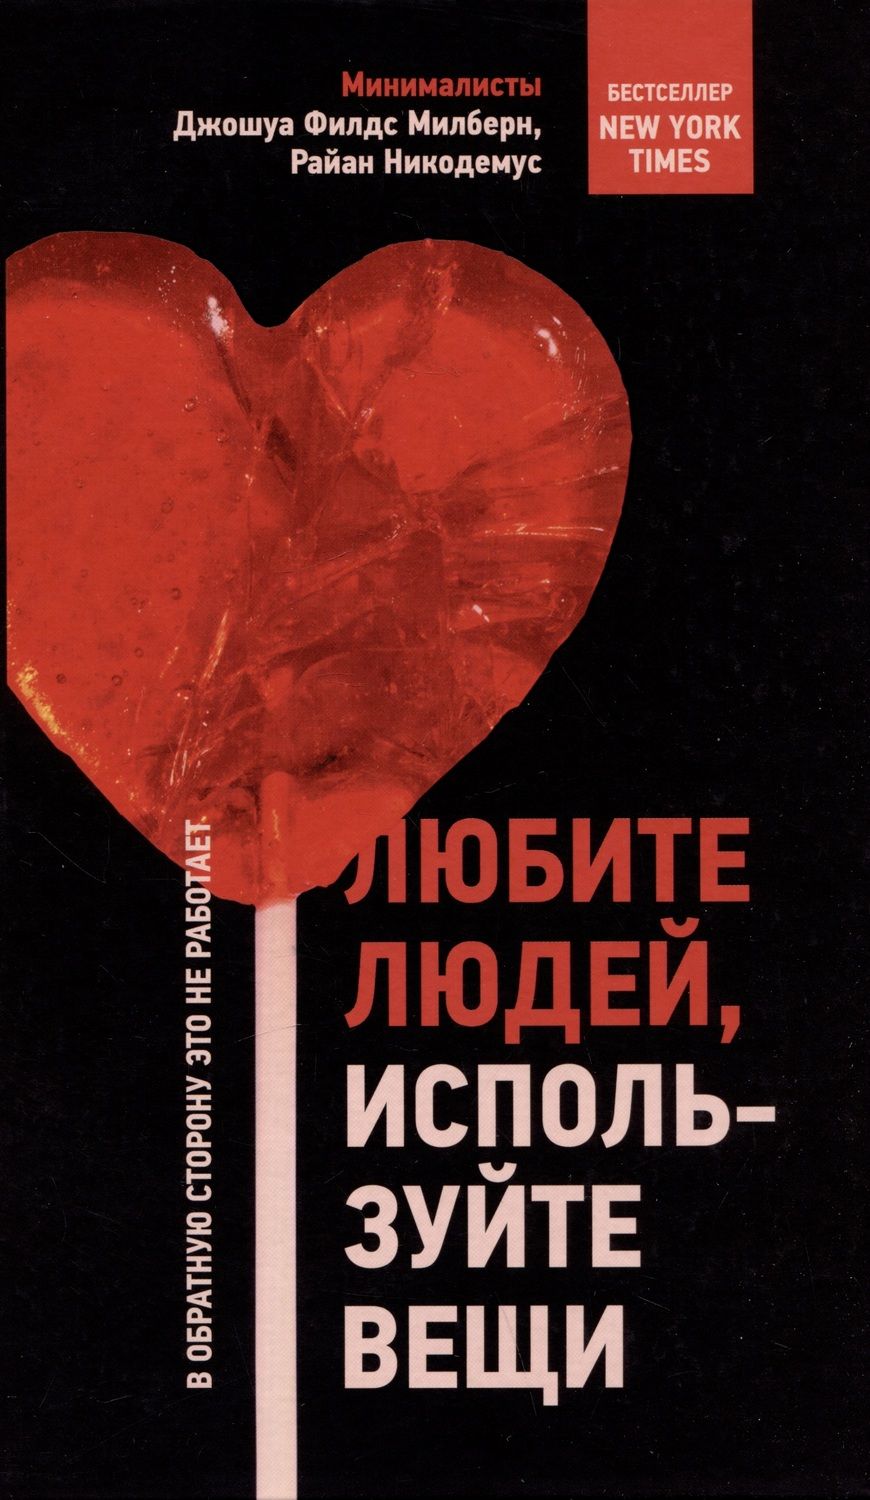 Обложка книги "Милберн, Никодемус: Любите людей, используйте вещи. В обратную сторону это не работает"